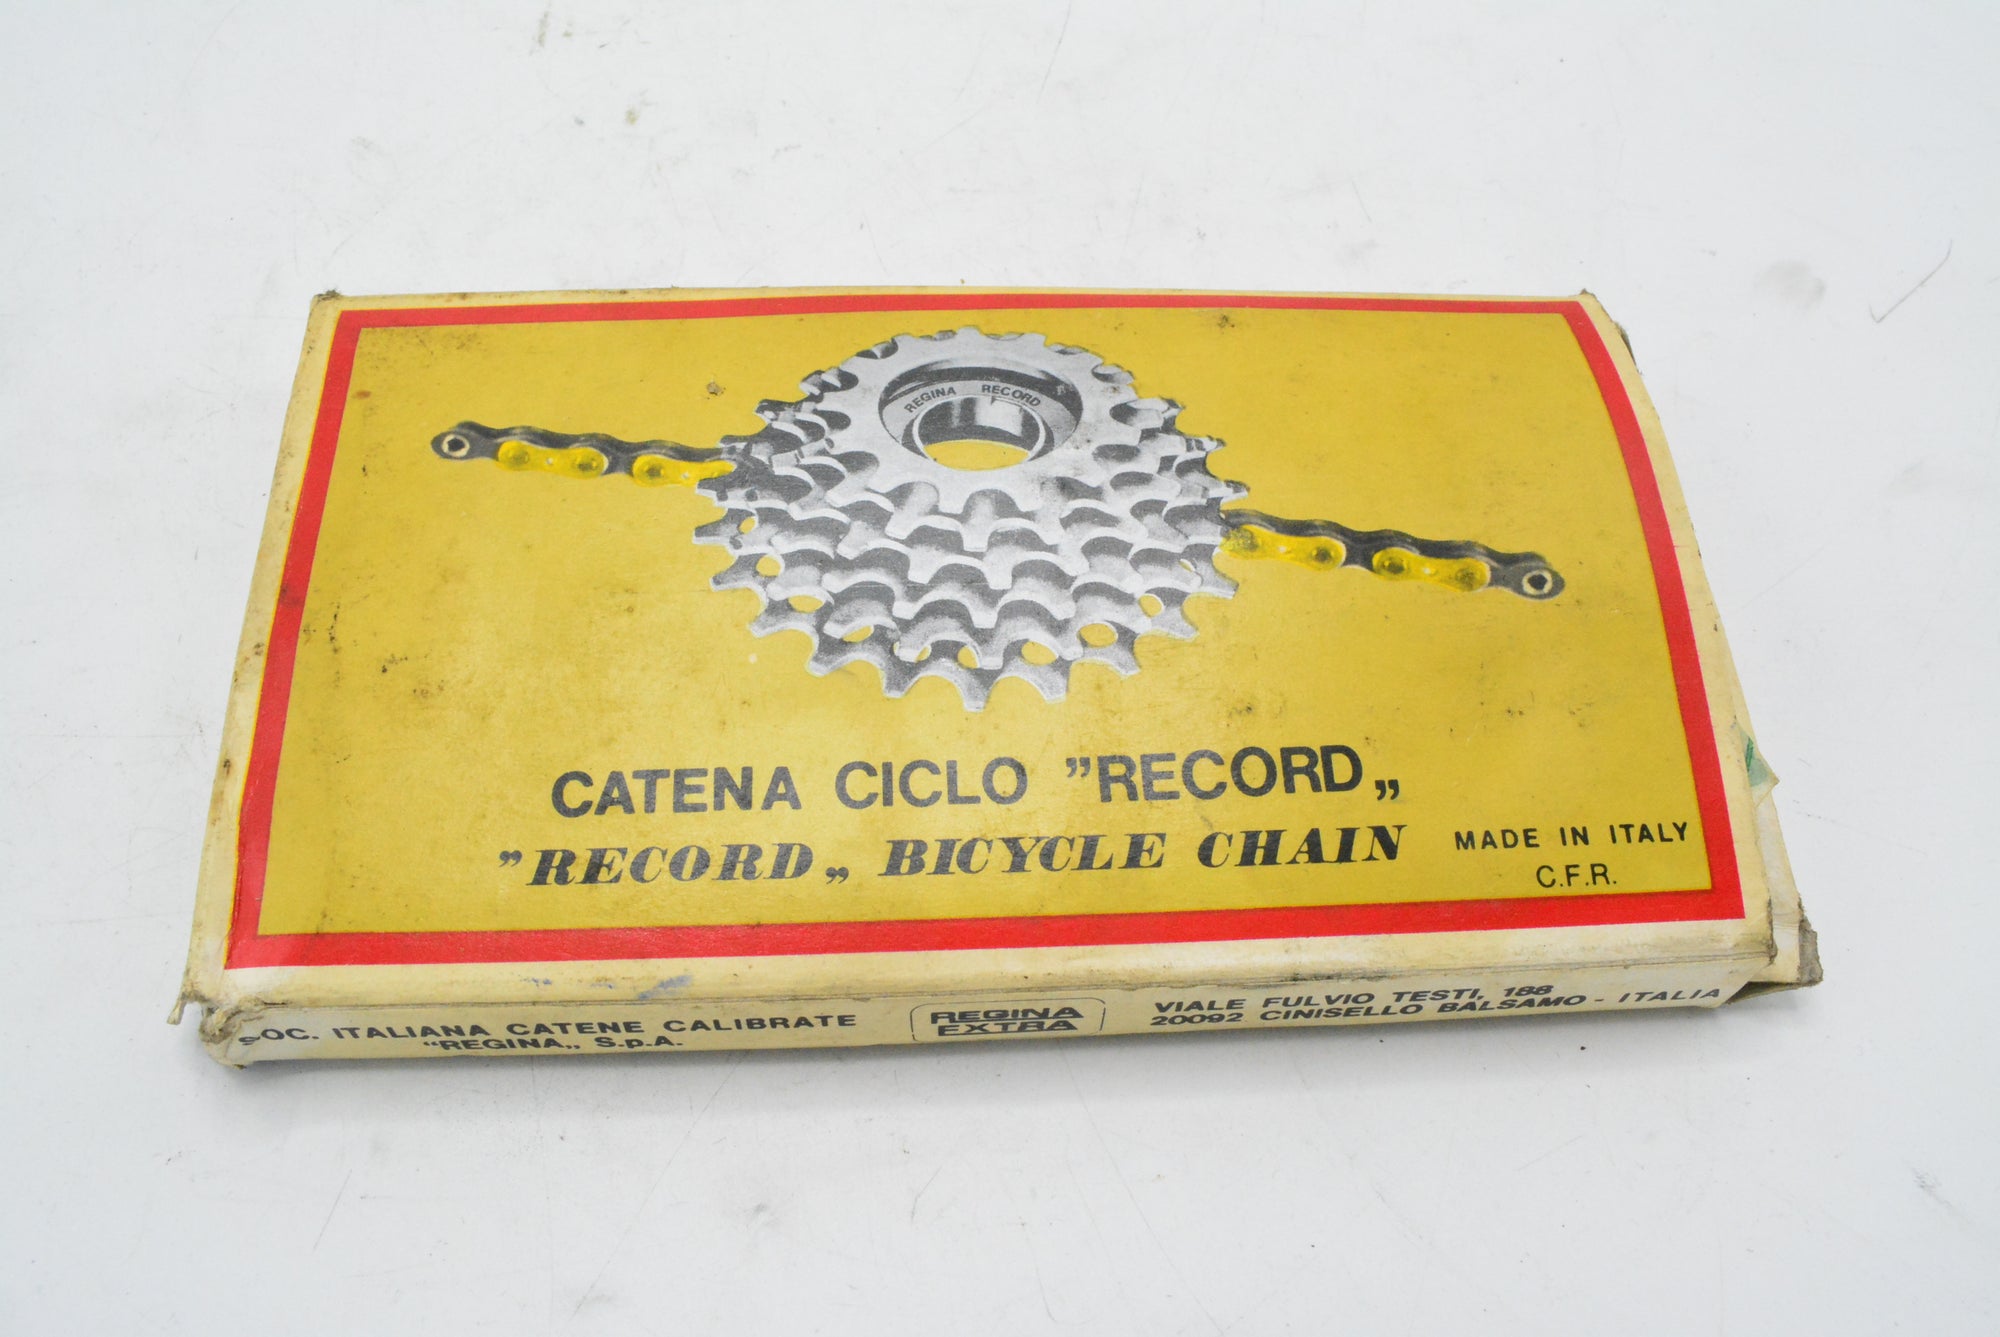 Regina Record Kette NOS Ciclo Record Vintage Chain